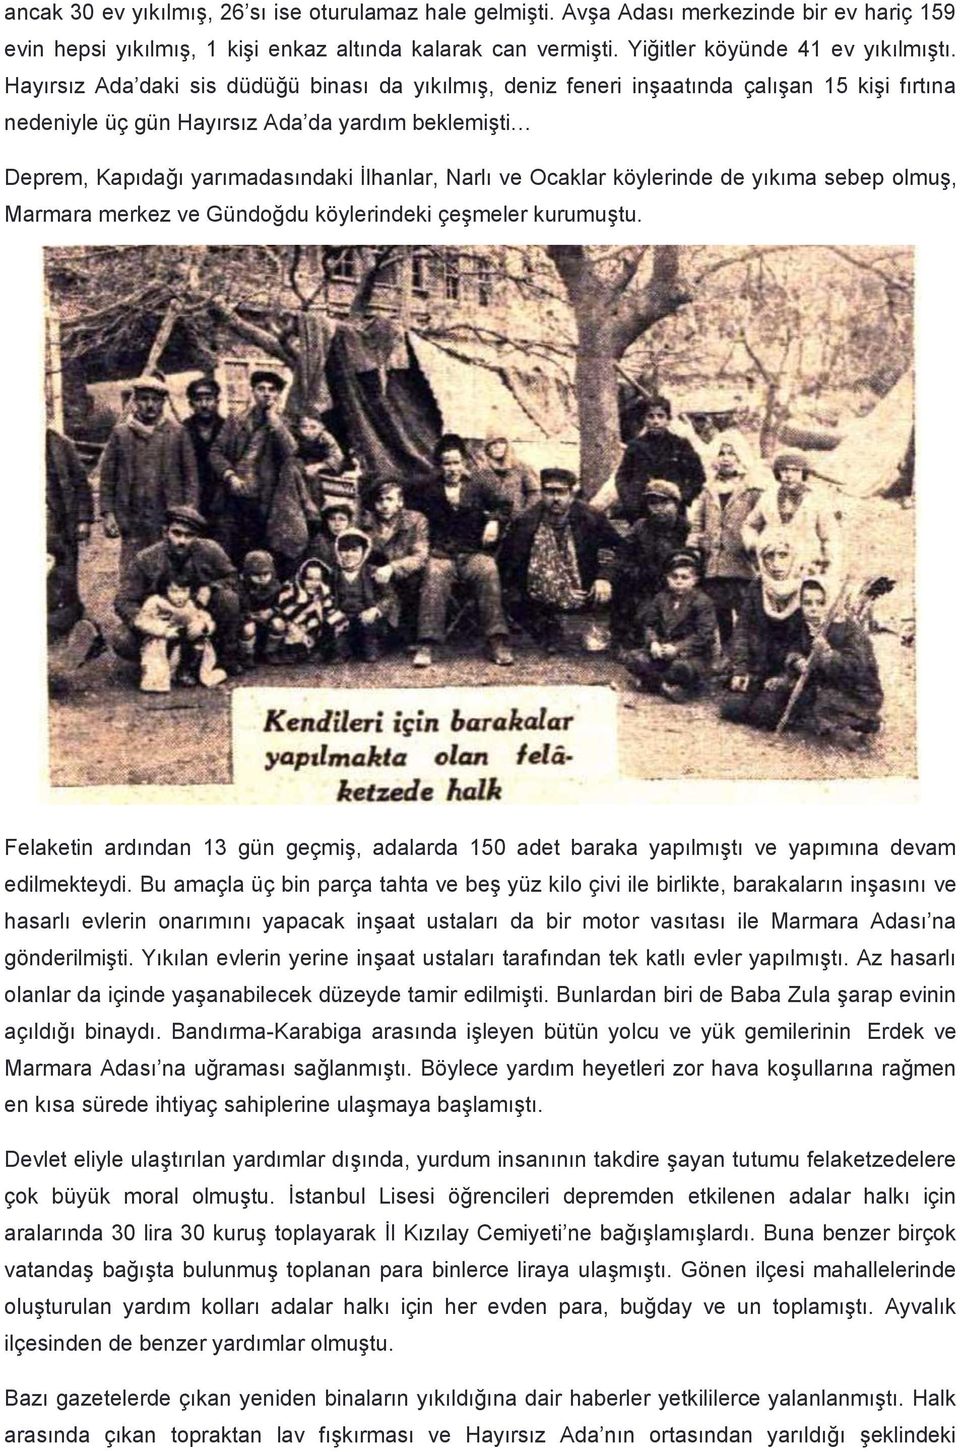 Ocaklar köylerinde de yıkıma sebep olmuş, Marmara merkez ve Gündoğdu köylerindeki çeşmeler kurumuştu.